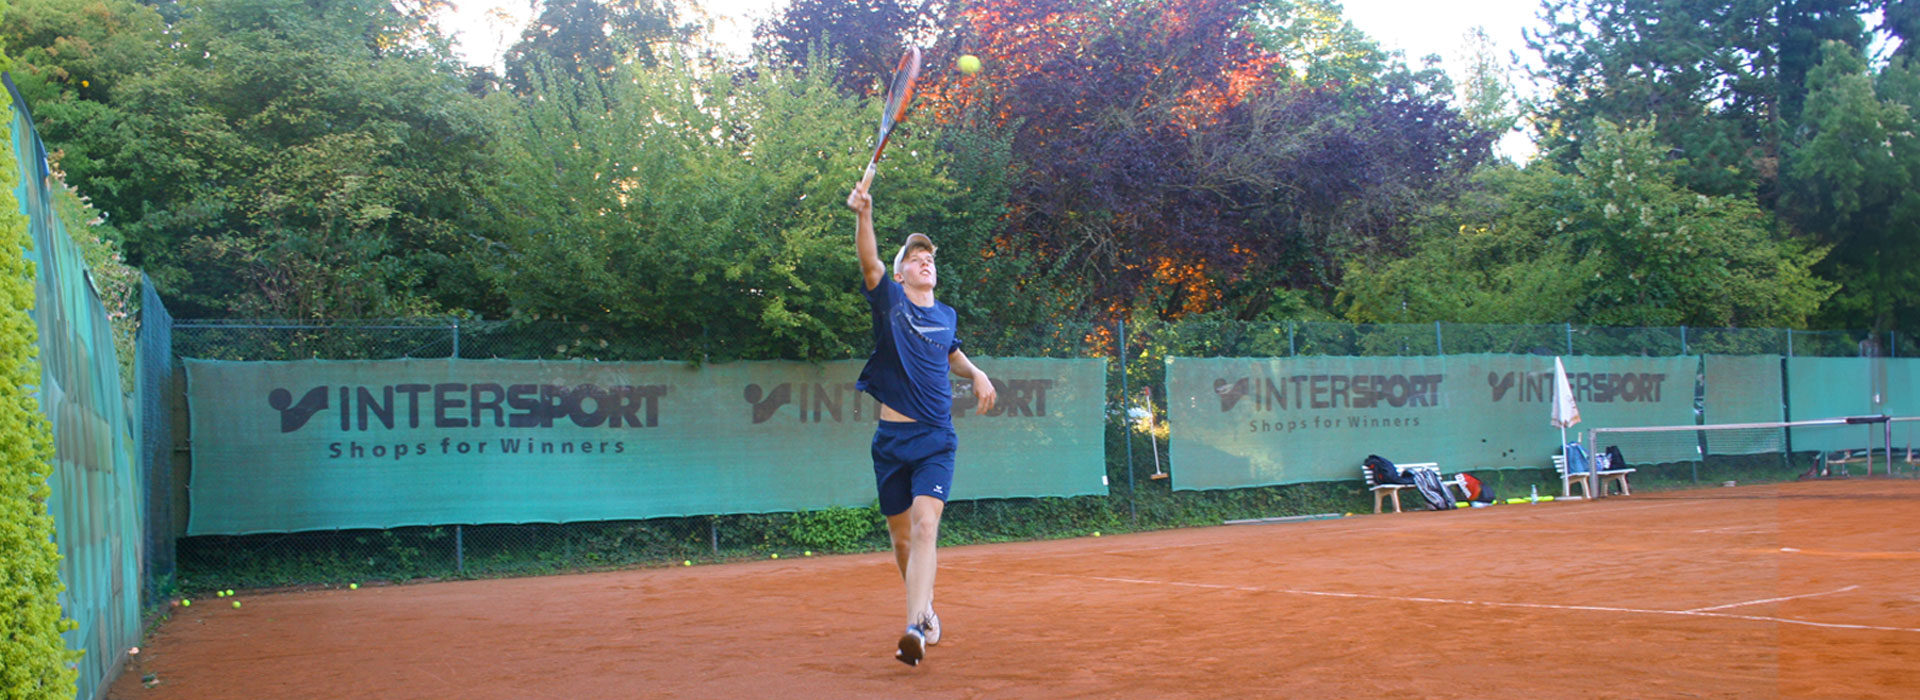 Tennis-Club-Blau-Weiss-Bornheim-Home